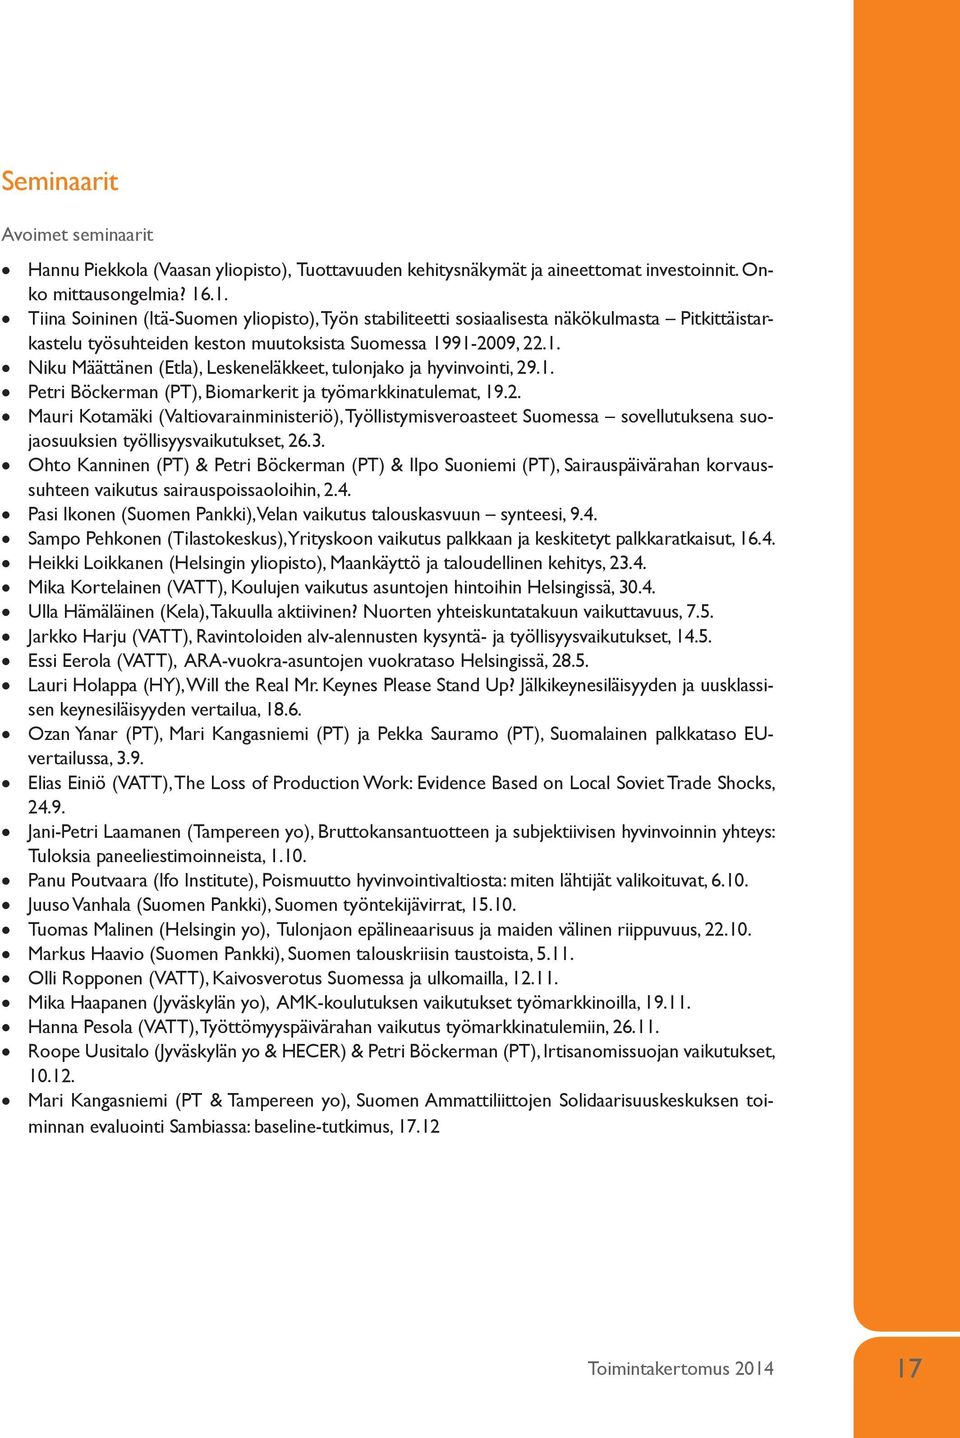 1. Petri Böckerman (PT), Biomarkerit ja työmarkkinatulemat, 19.2. Mauri Kotamäki (Valtiovarainministeriö), Työllistymisveroasteet Suomessa sovellutuksena suojaosuuksien työllisyysvaikutukset, 26.3.